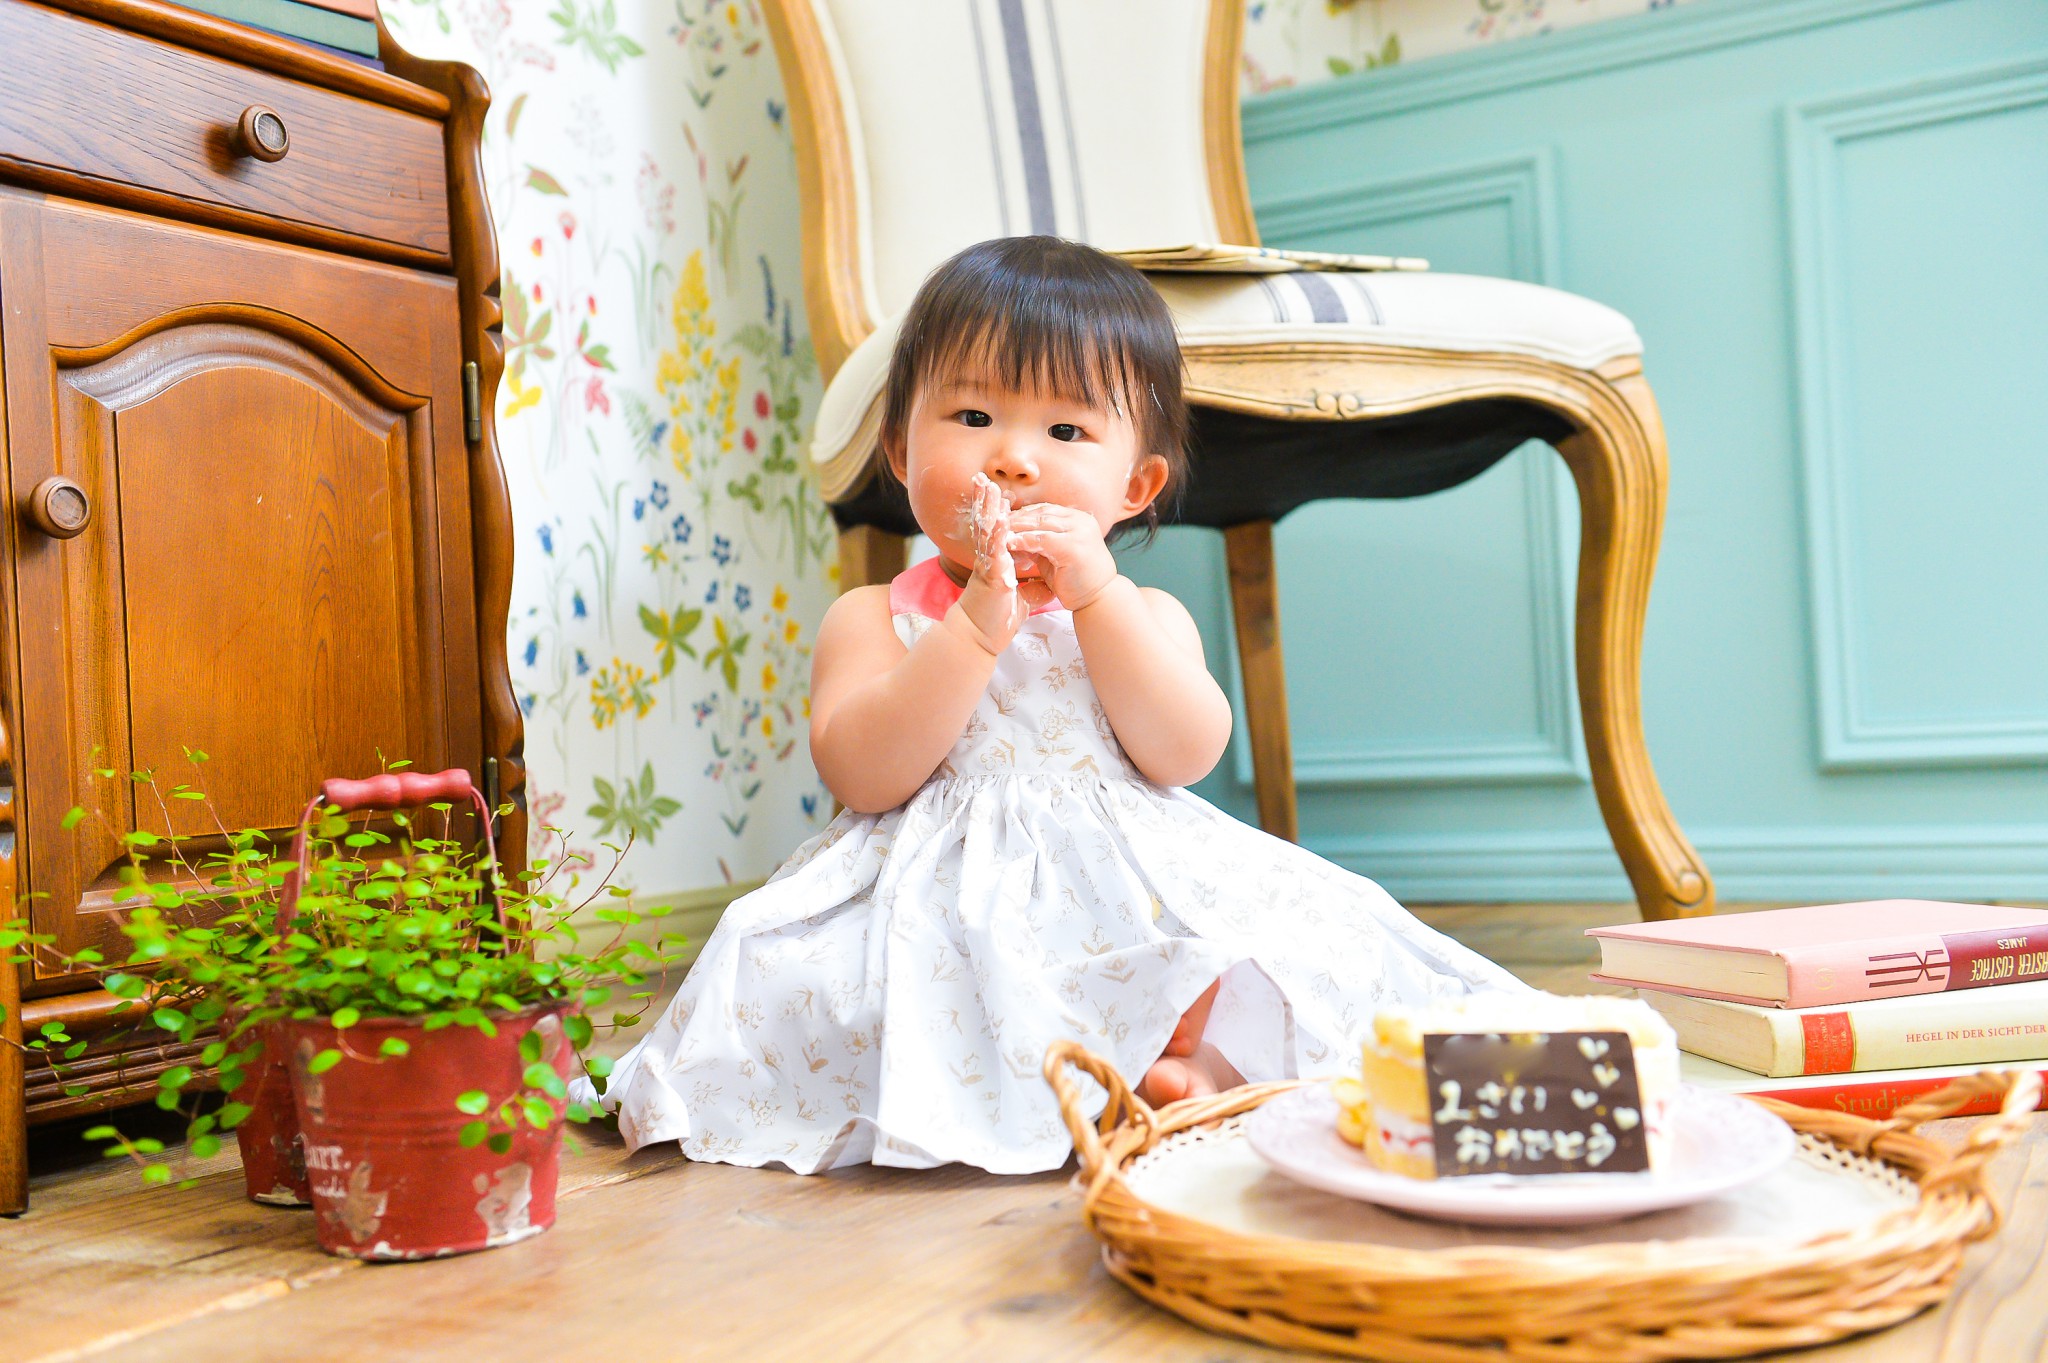 スマッシュケーキ 1歳バースデーの記念に かわいいです 東京 目黒区のおしゃれな一軒家型キッズフォトスタジオ Pindot Studio